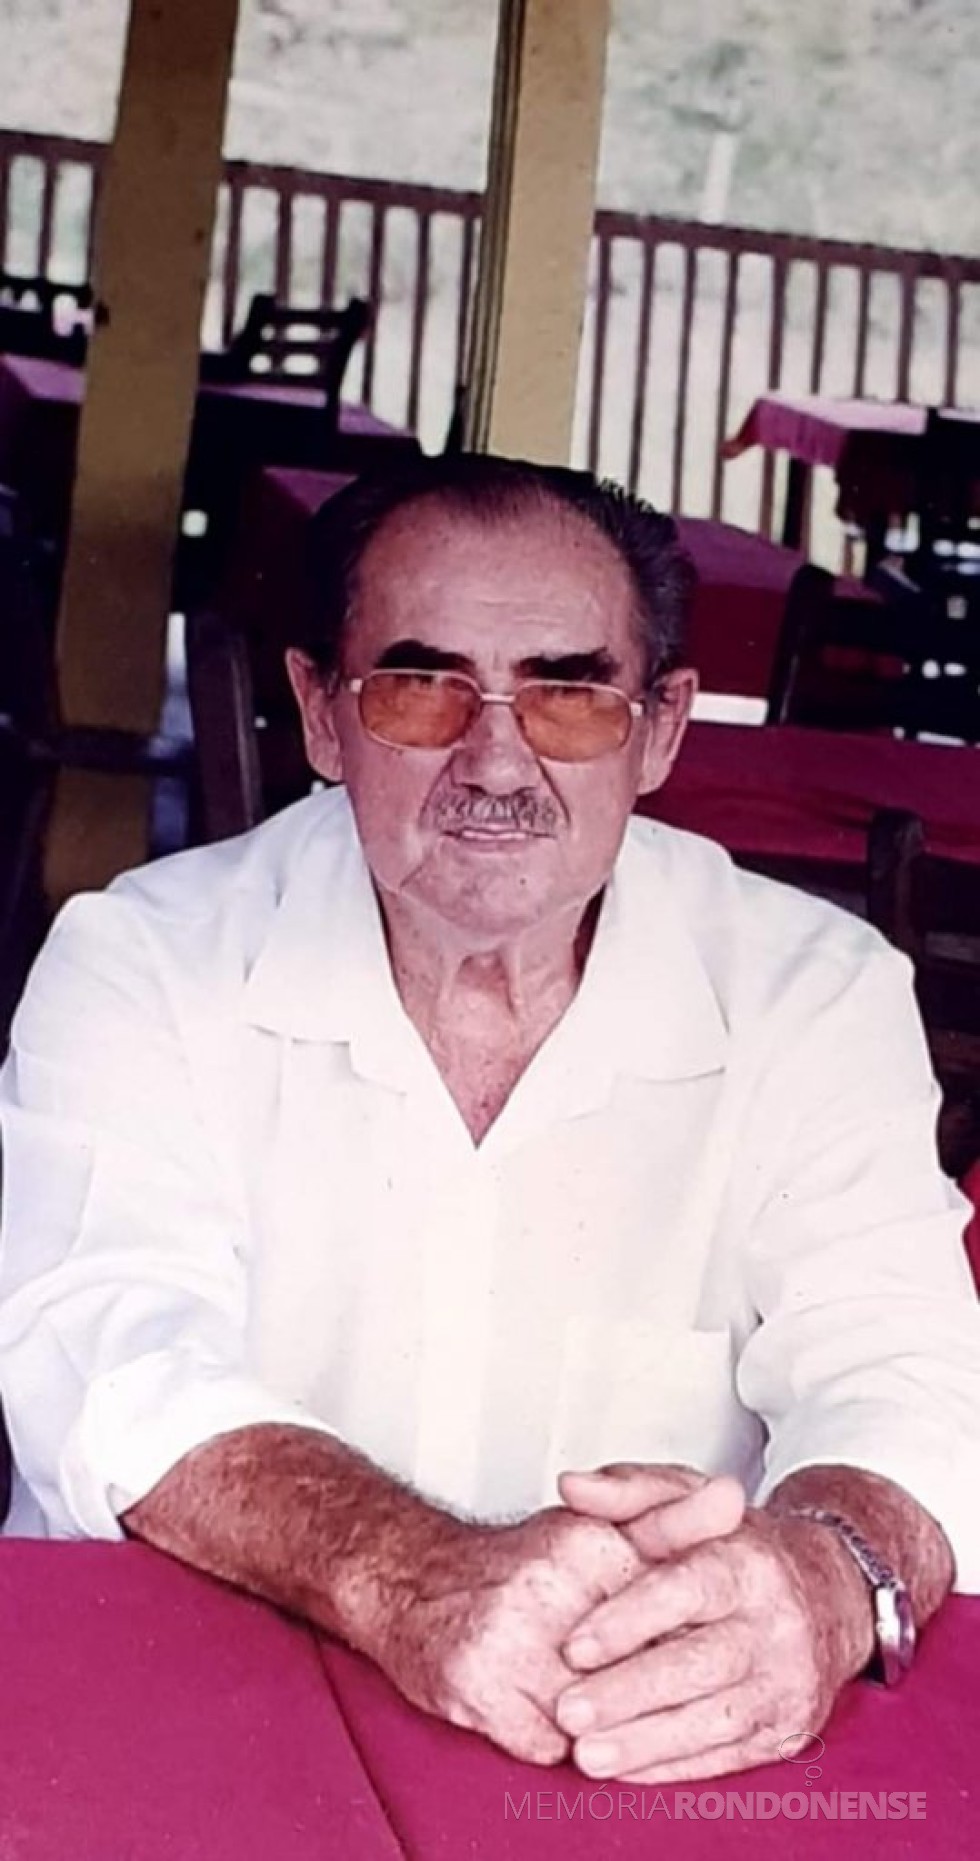 || Ex-rondonense Helvino Gebauer homenageado com nome de rua na cidade de Sinop (MT), em 2021.
Imagem: Acervo da Família - FOTO 6 - 